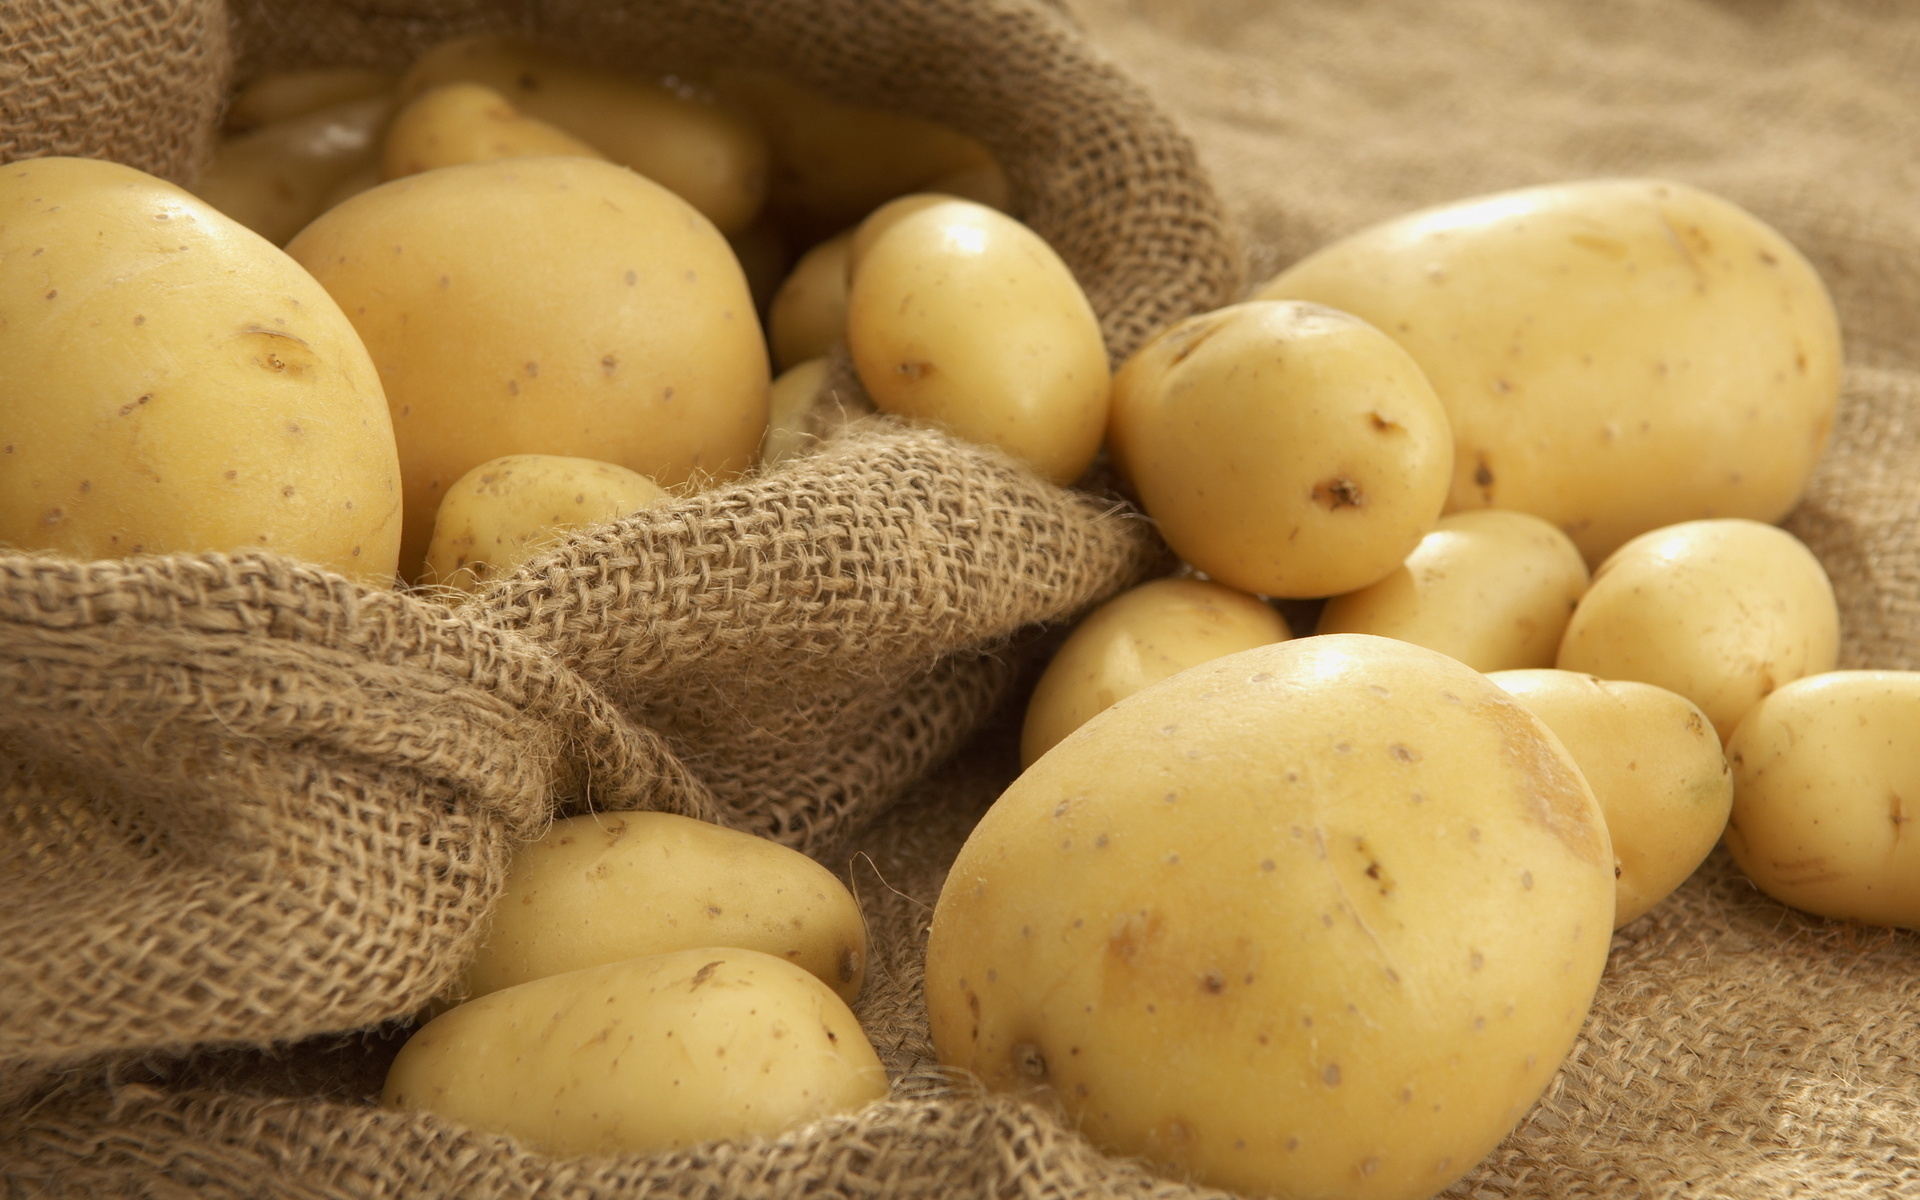 Οι πατάτες αυξάνουν τον κίνδυνο εκδήλωσης υπέρτασης